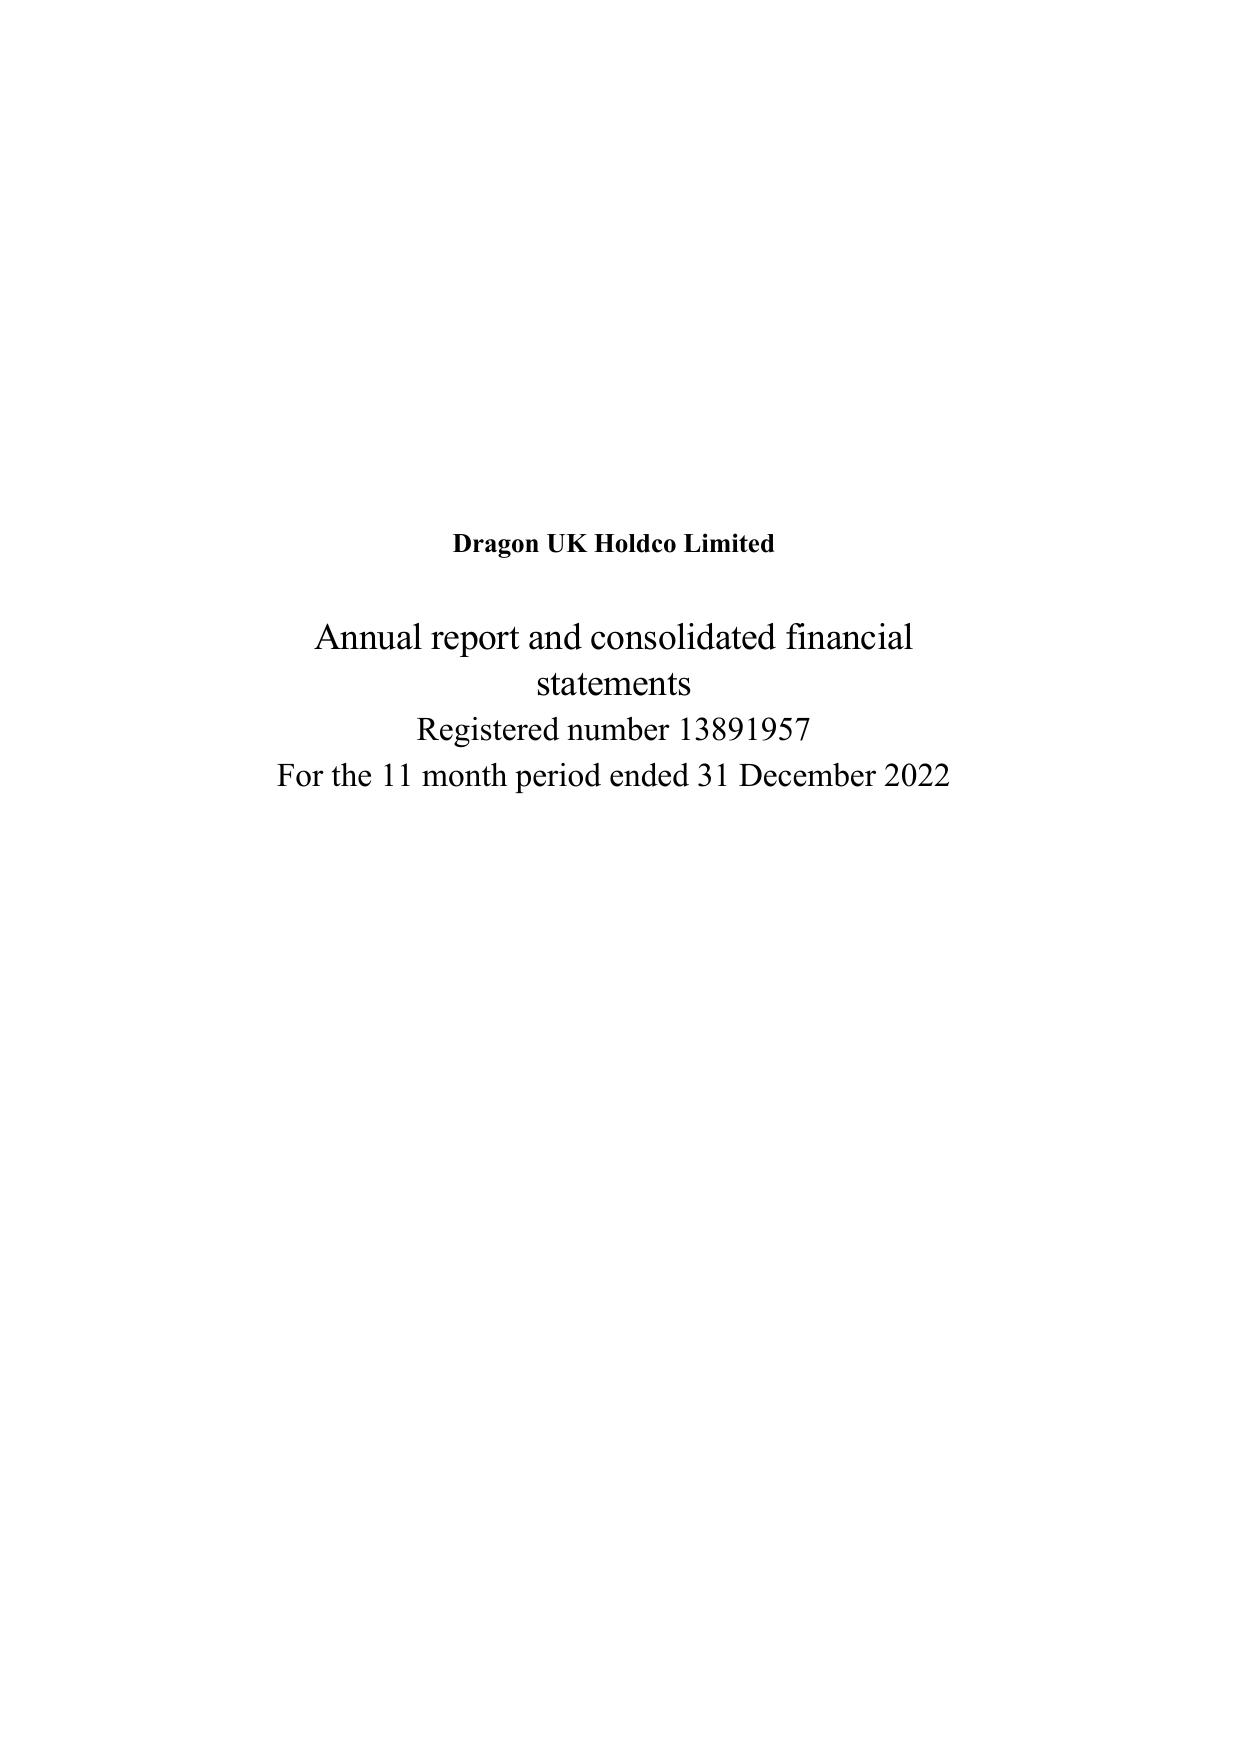 PECB 2023 Annual Report